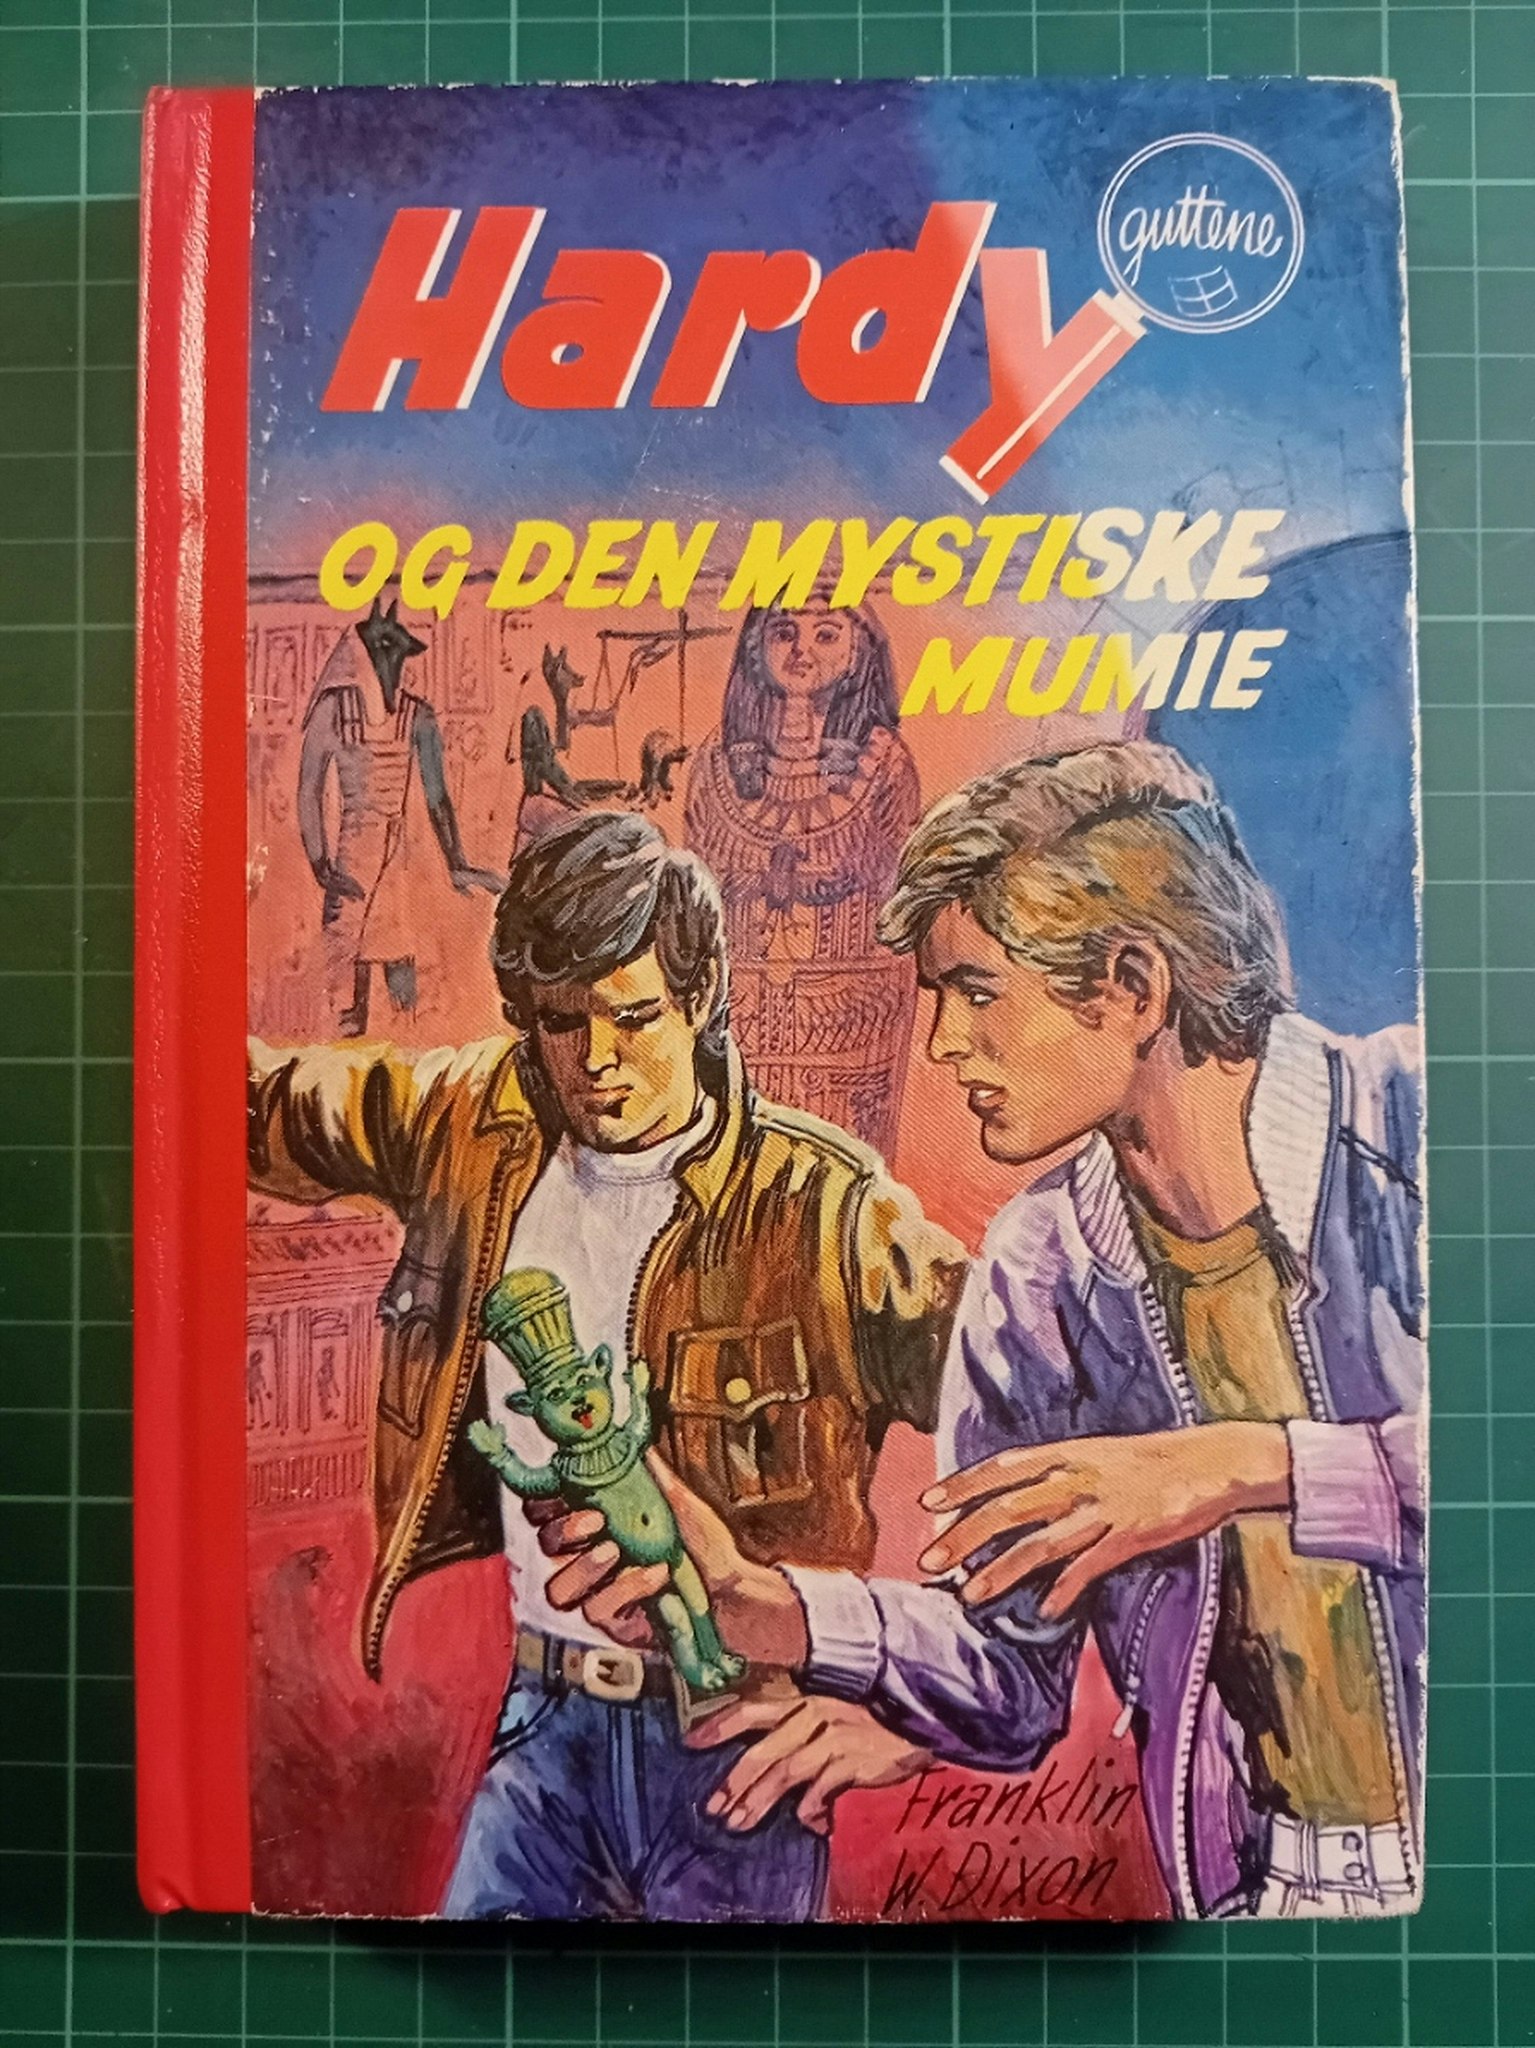 075: Hardy-guttene og den mystiske mumie